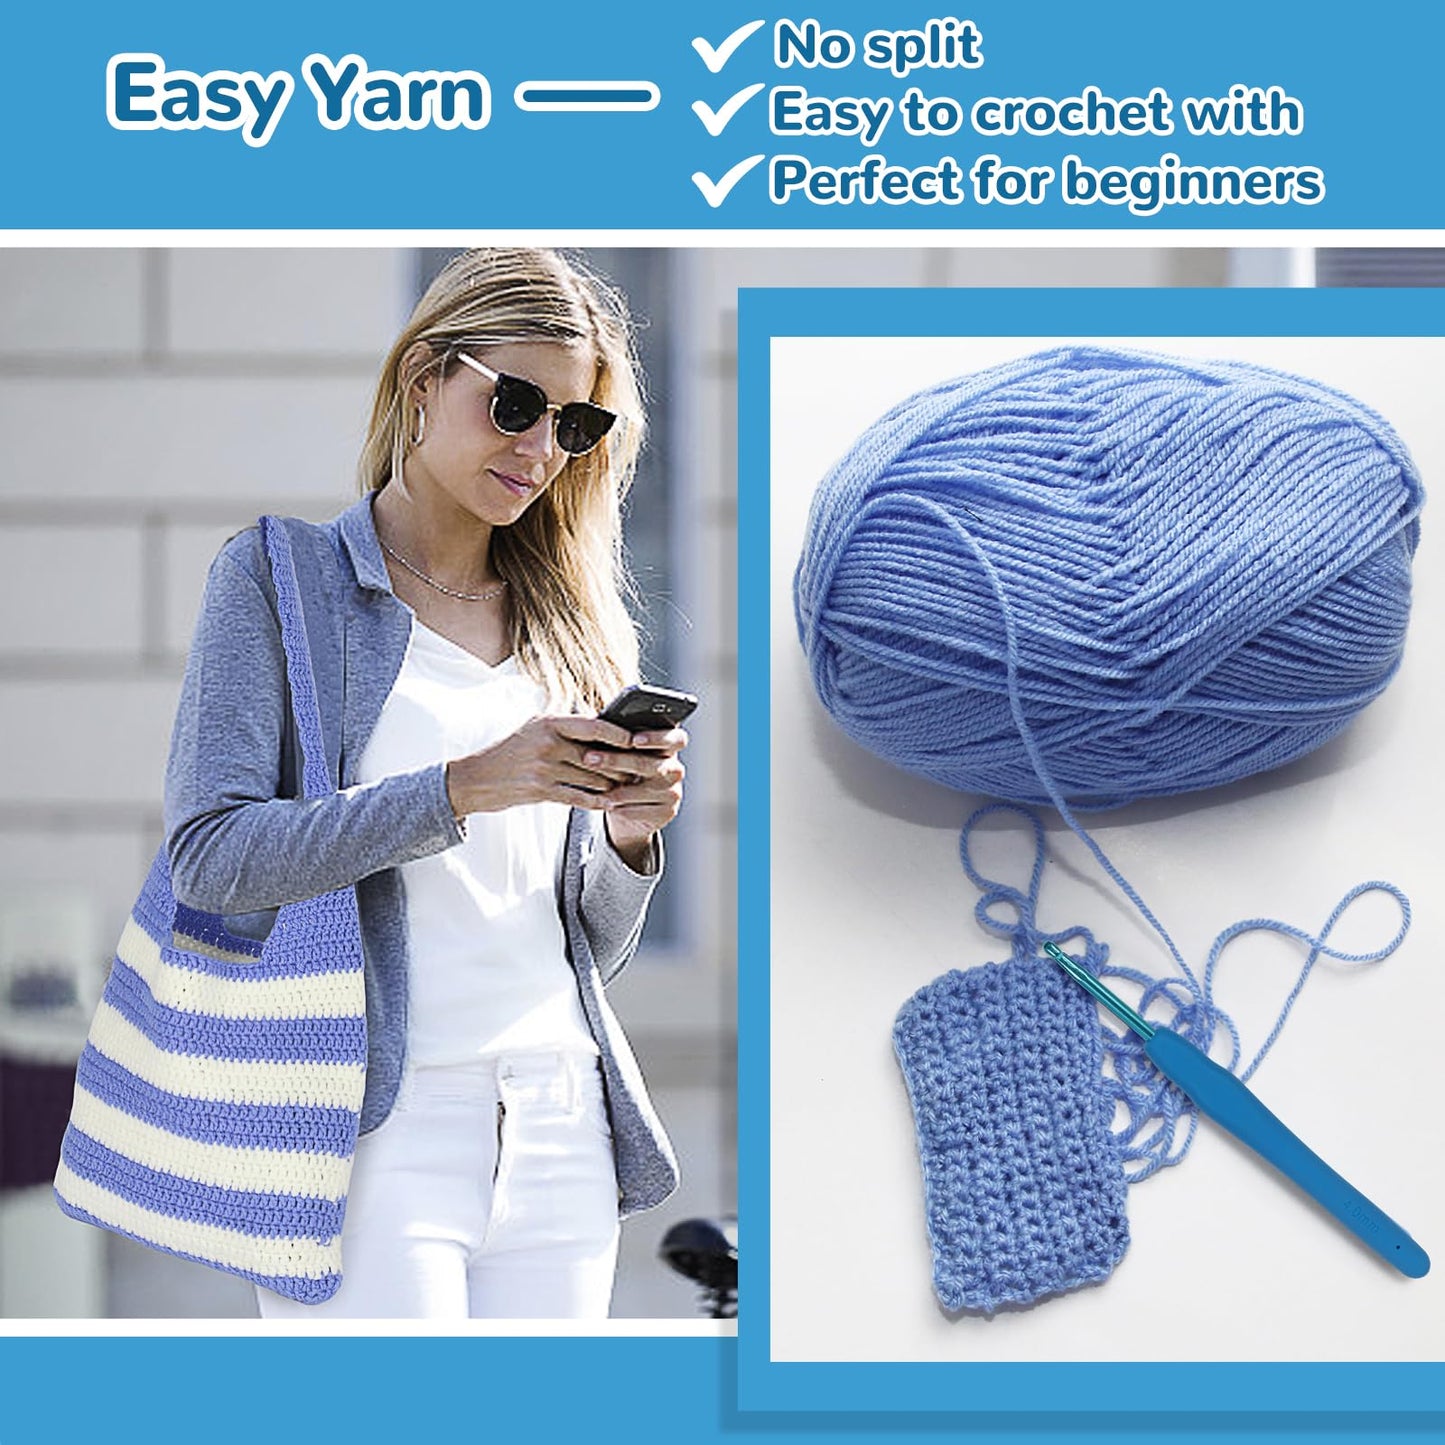 Katech Crochet Kit for Beginners, Striped Tote Bag Crochet Set